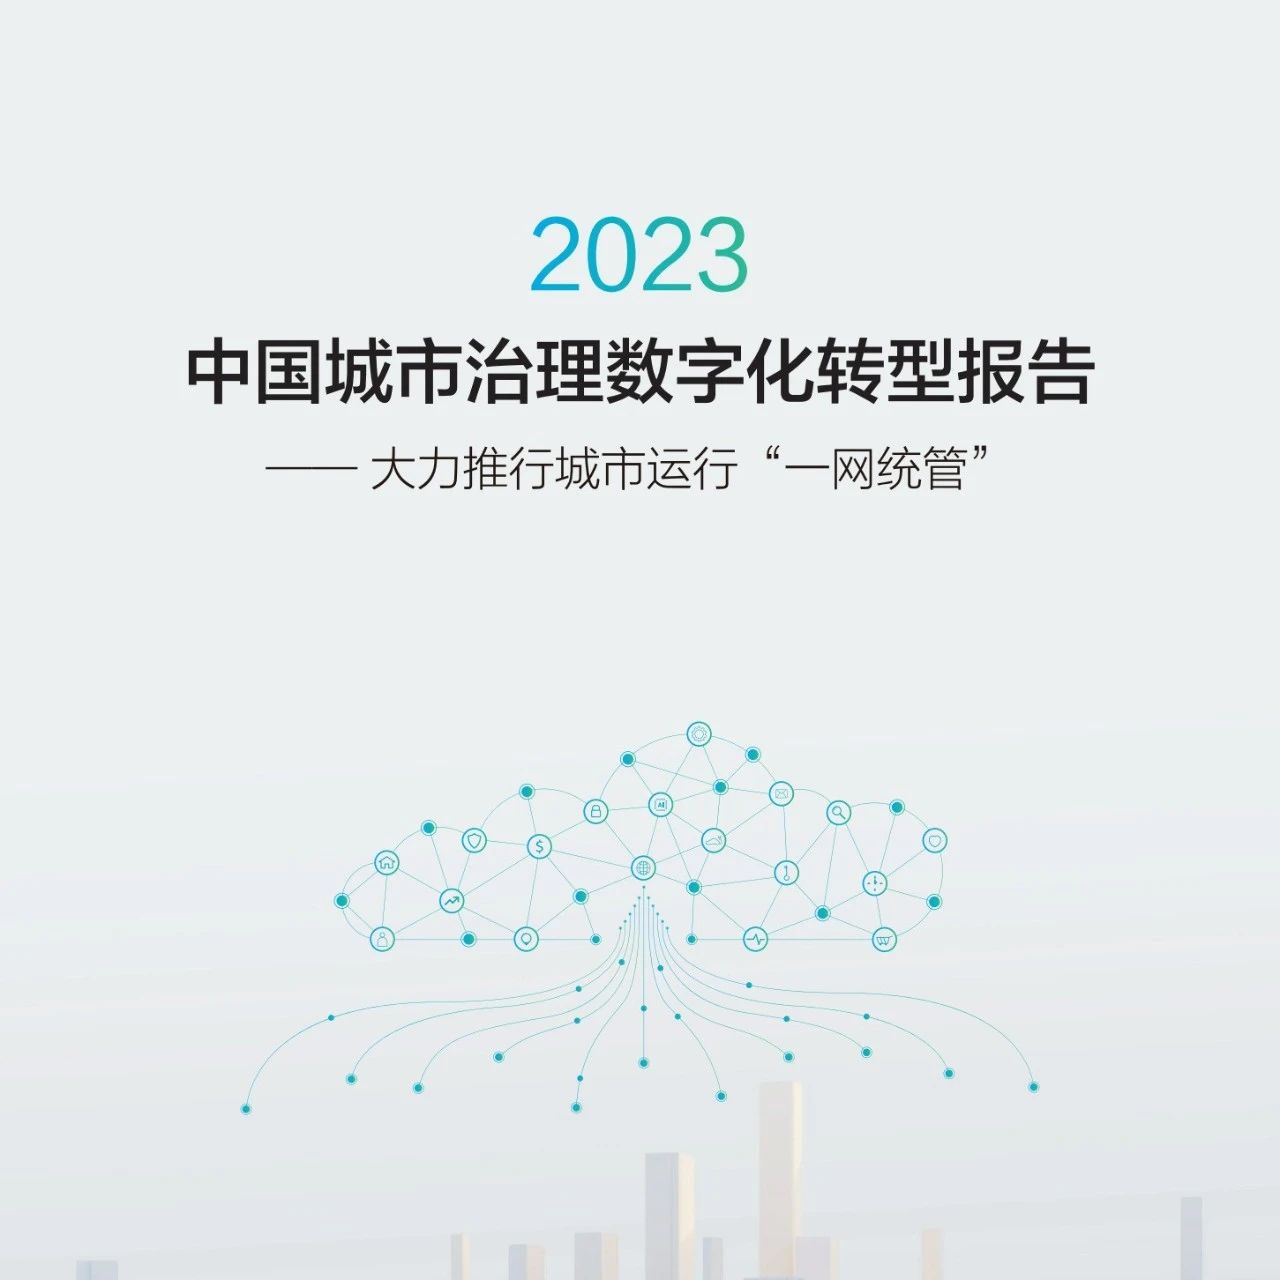 华为发布《中国城市治理数字化转型报告》，打造城市治理“一网统管”新范式